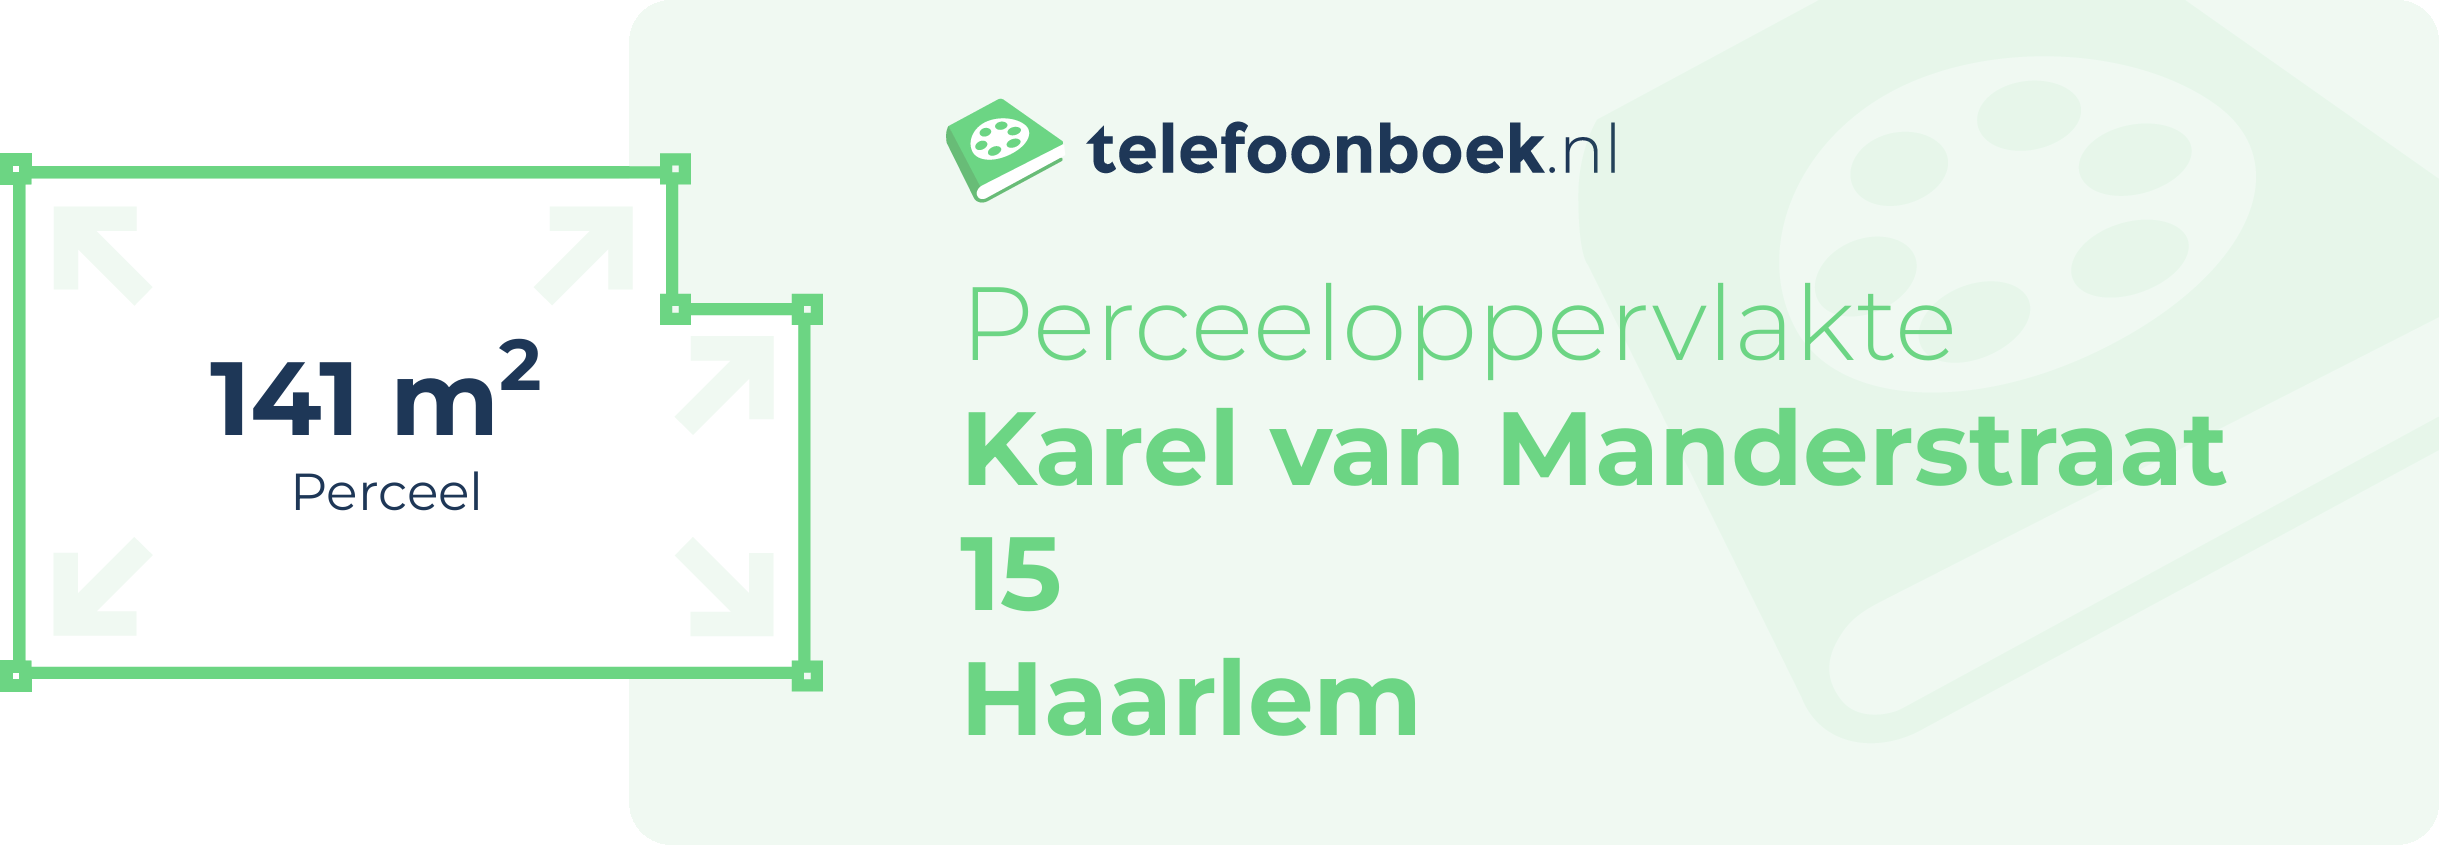 Perceeloppervlakte Karel Van Manderstraat 15 Haarlem